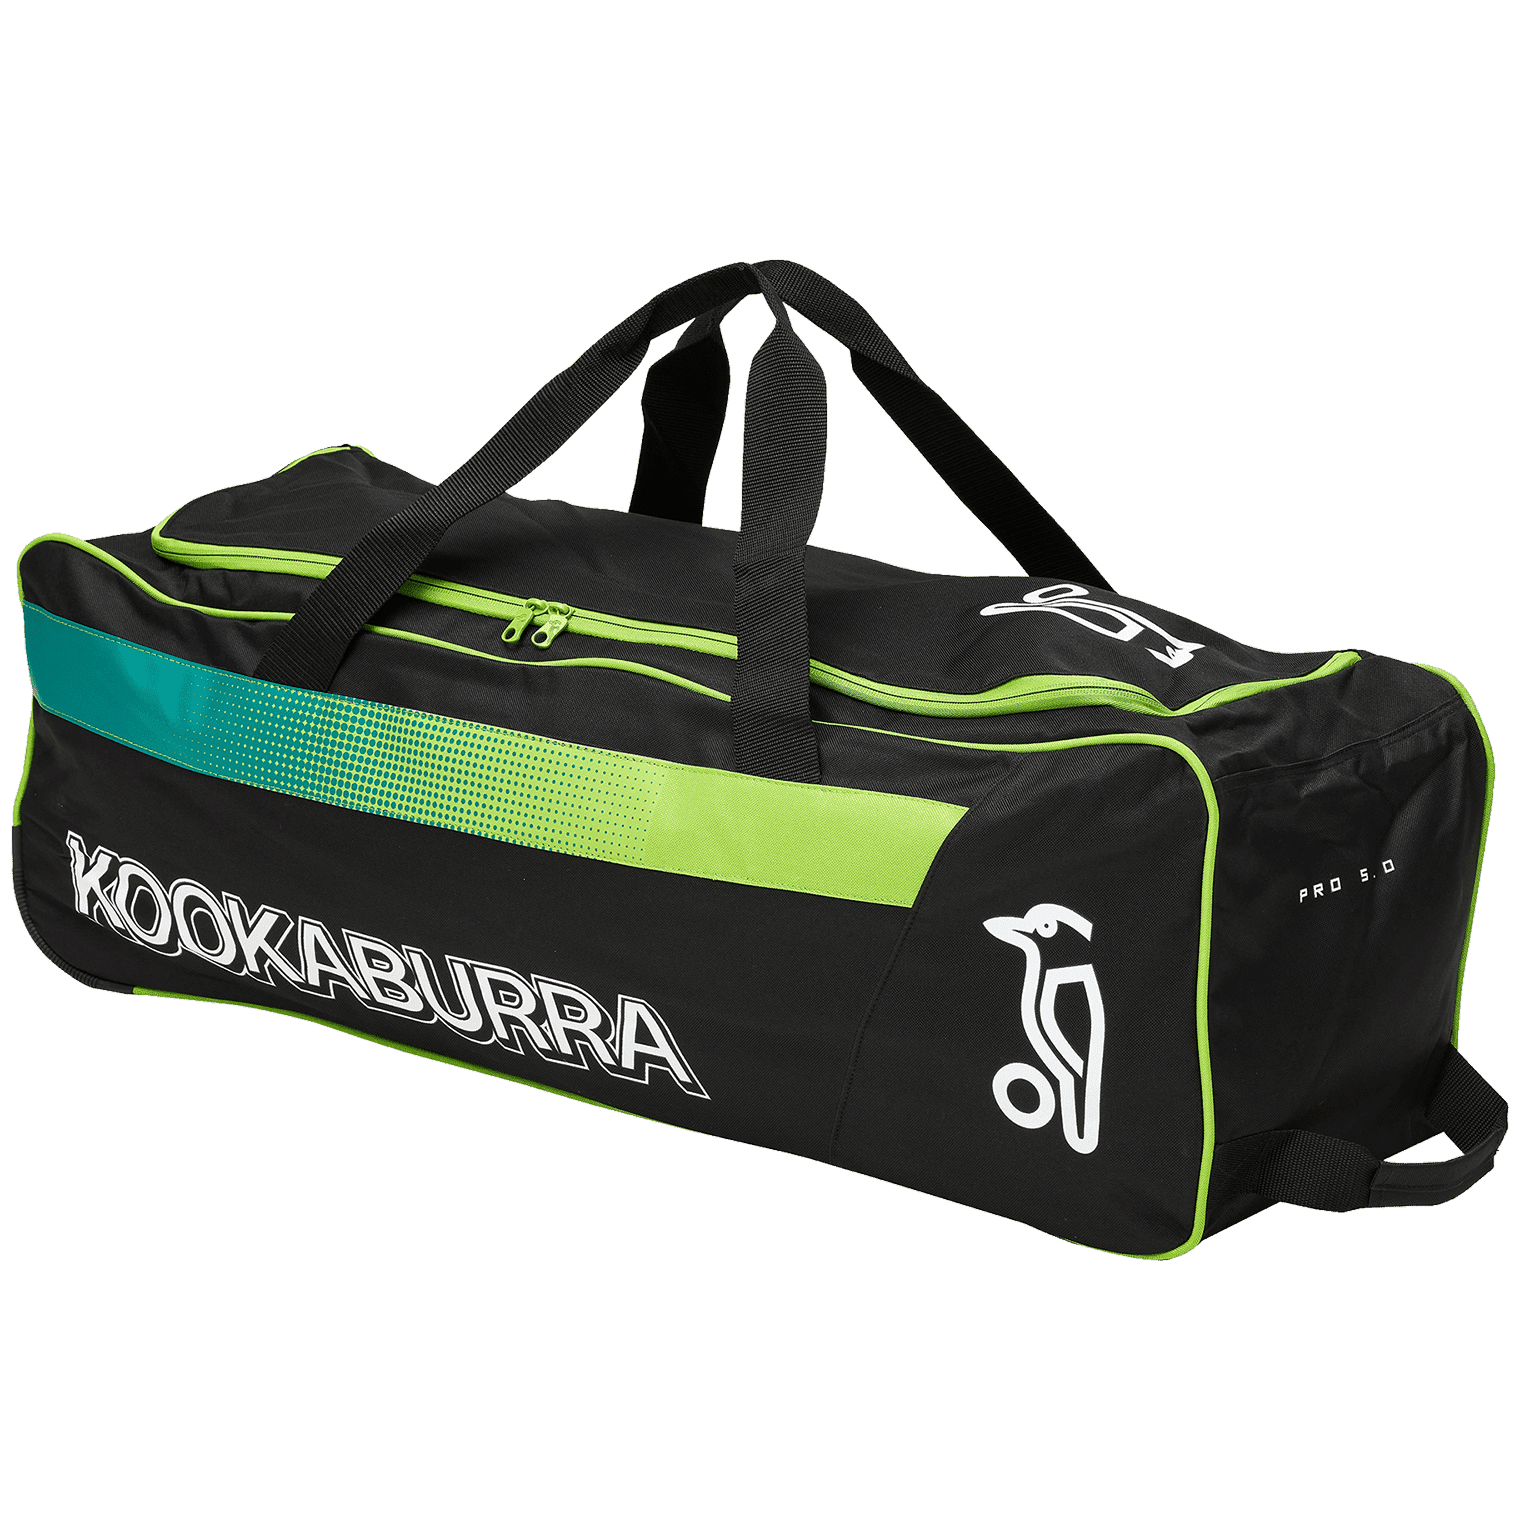 Kookaburra Cricket Bags Kookaburra 5.0 Wheelie Cricket Bag